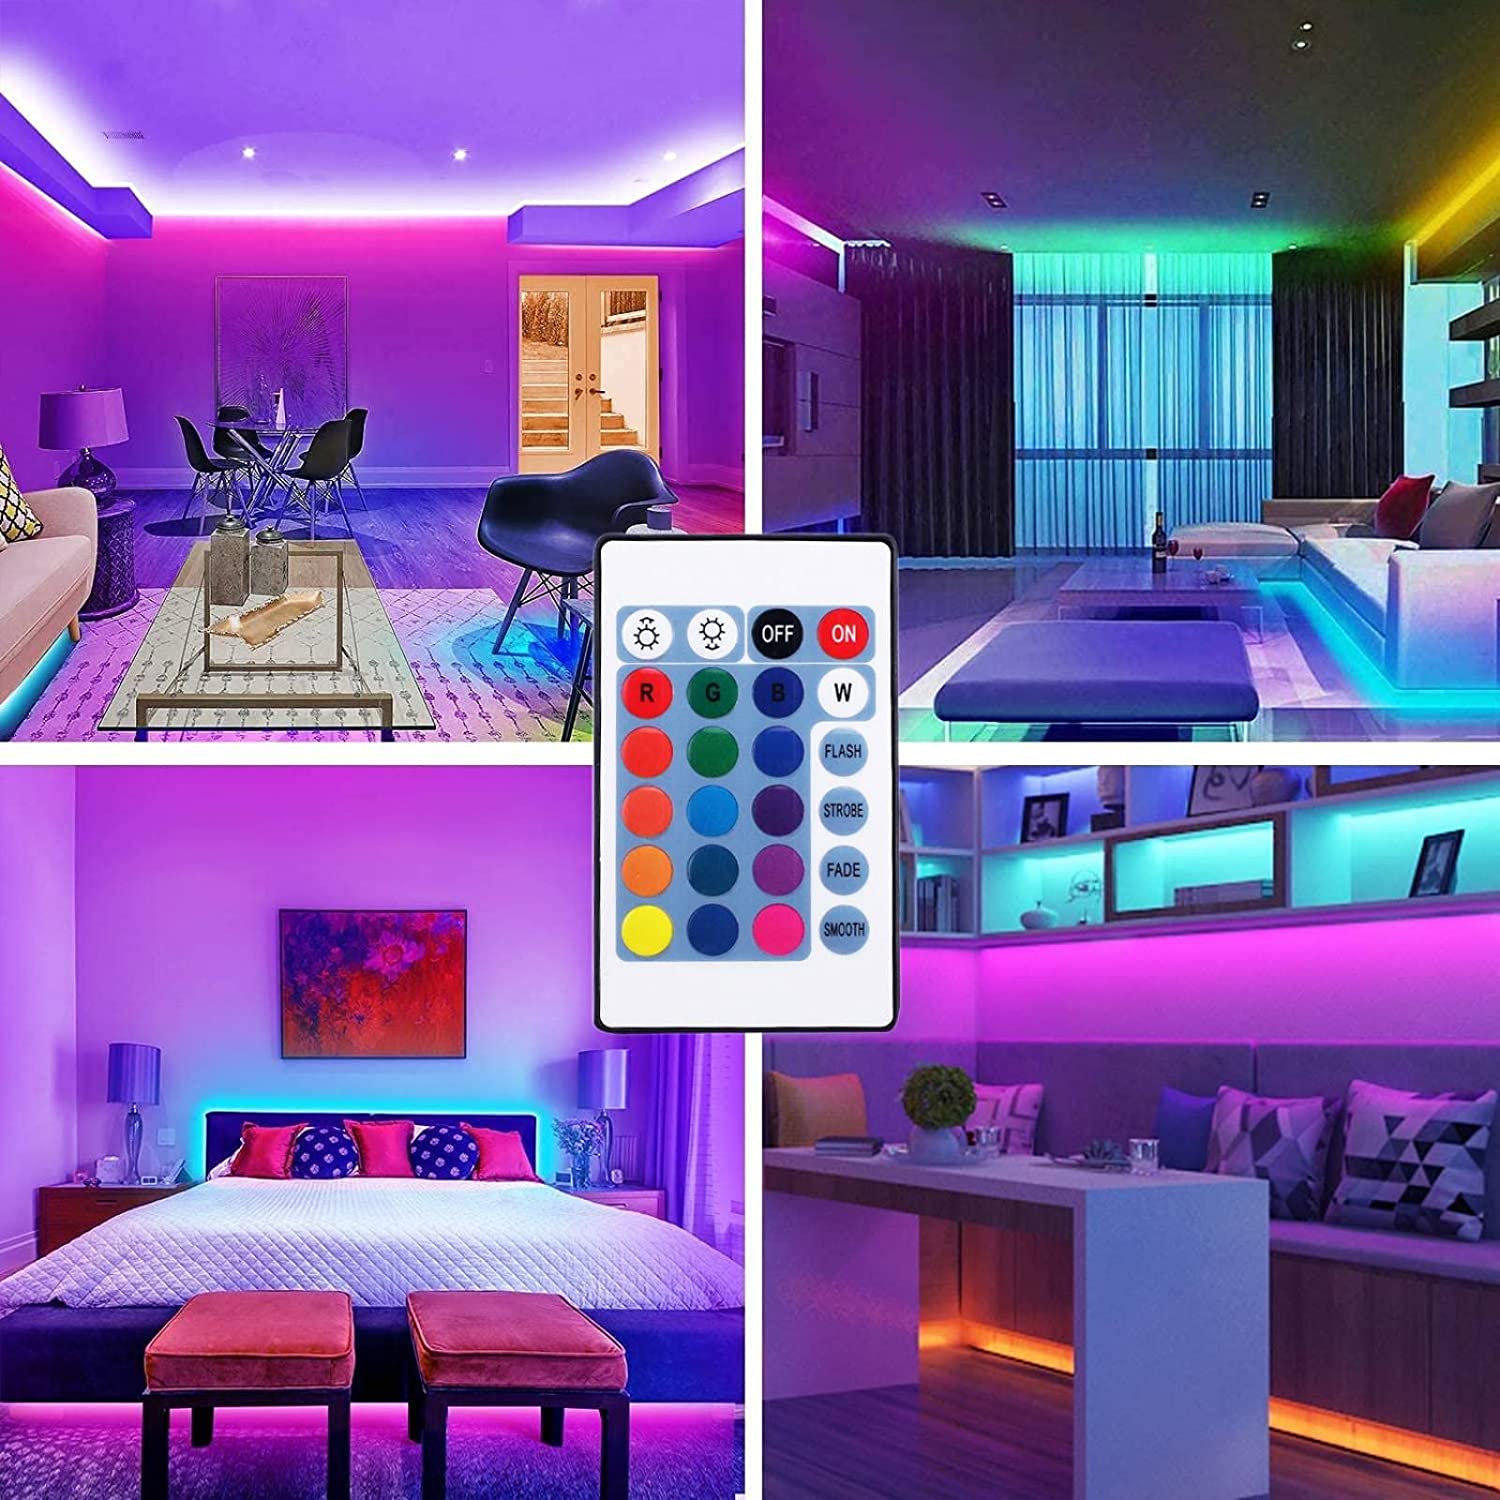 5m 150LED luz, barra de luz RGB con control remoto, luz LED para la sala de televisión del dormitorio, fiesta, decoración navideña, decoración de bricolaje